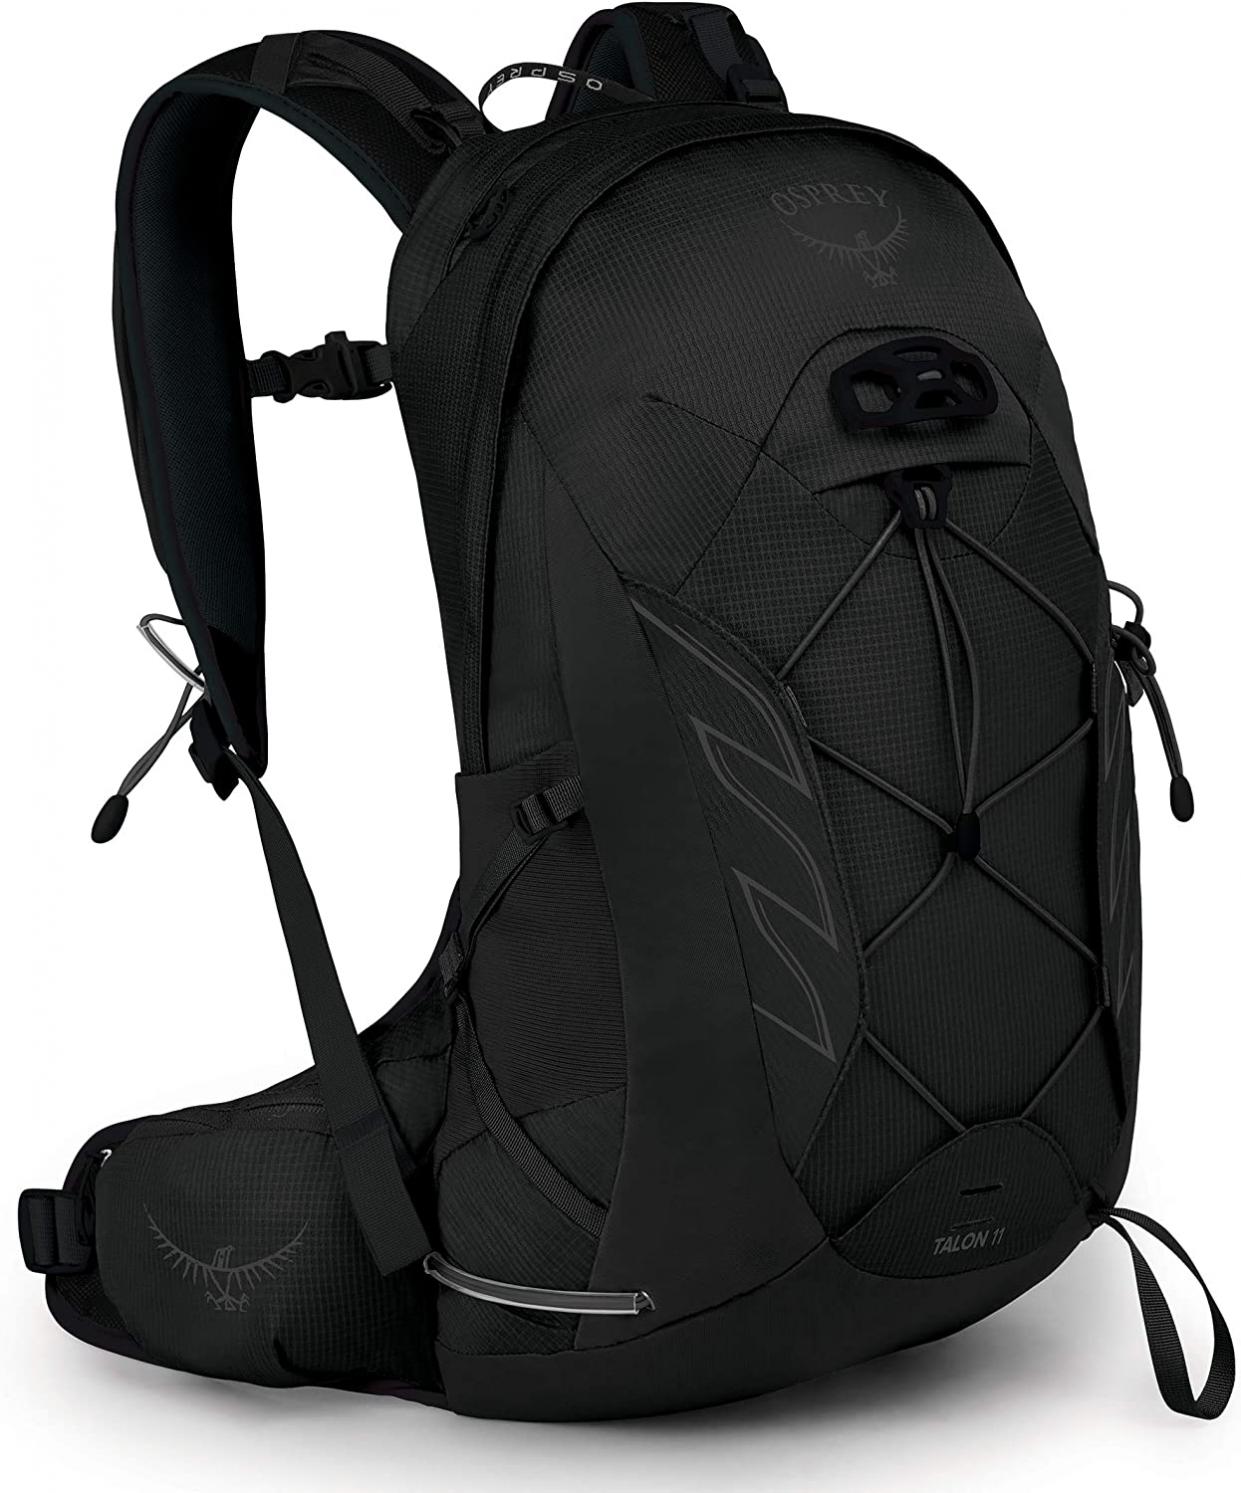 Osprey Talon 11 Men's Hiking Backpack Stealth Black, Large / X-Large